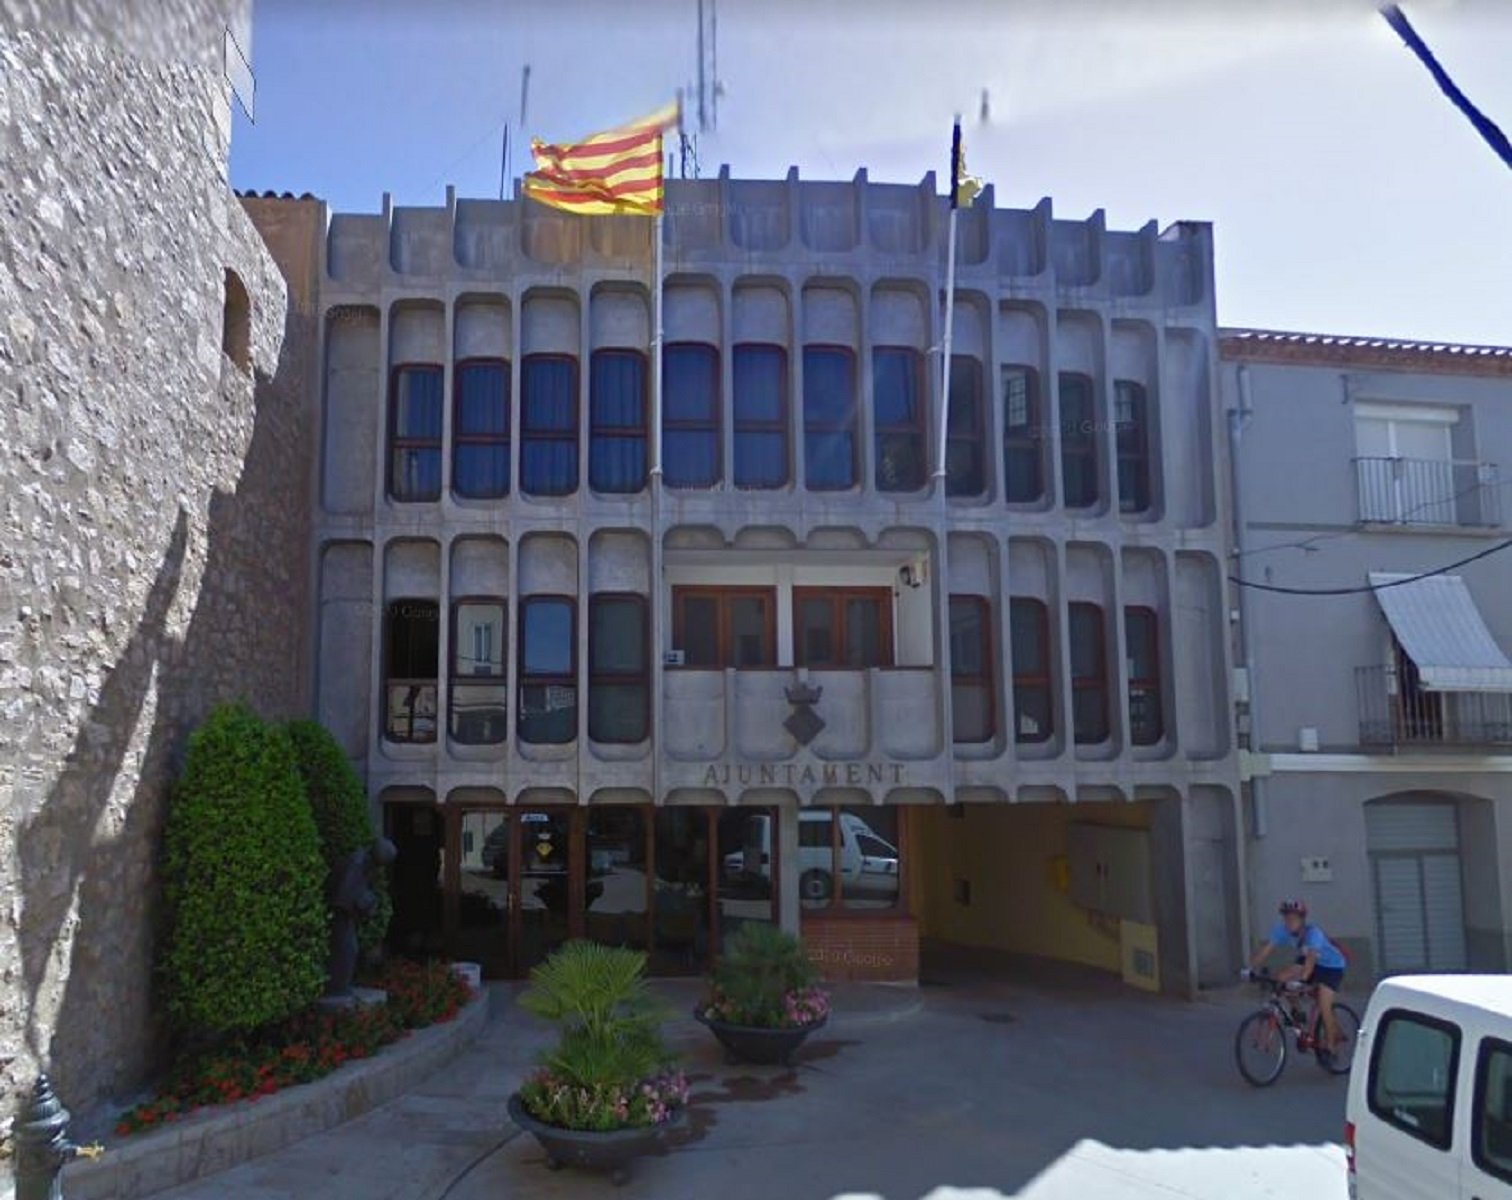 Per què la meitat d'ajuntaments del PSC no posen la bandera d'Espanya?